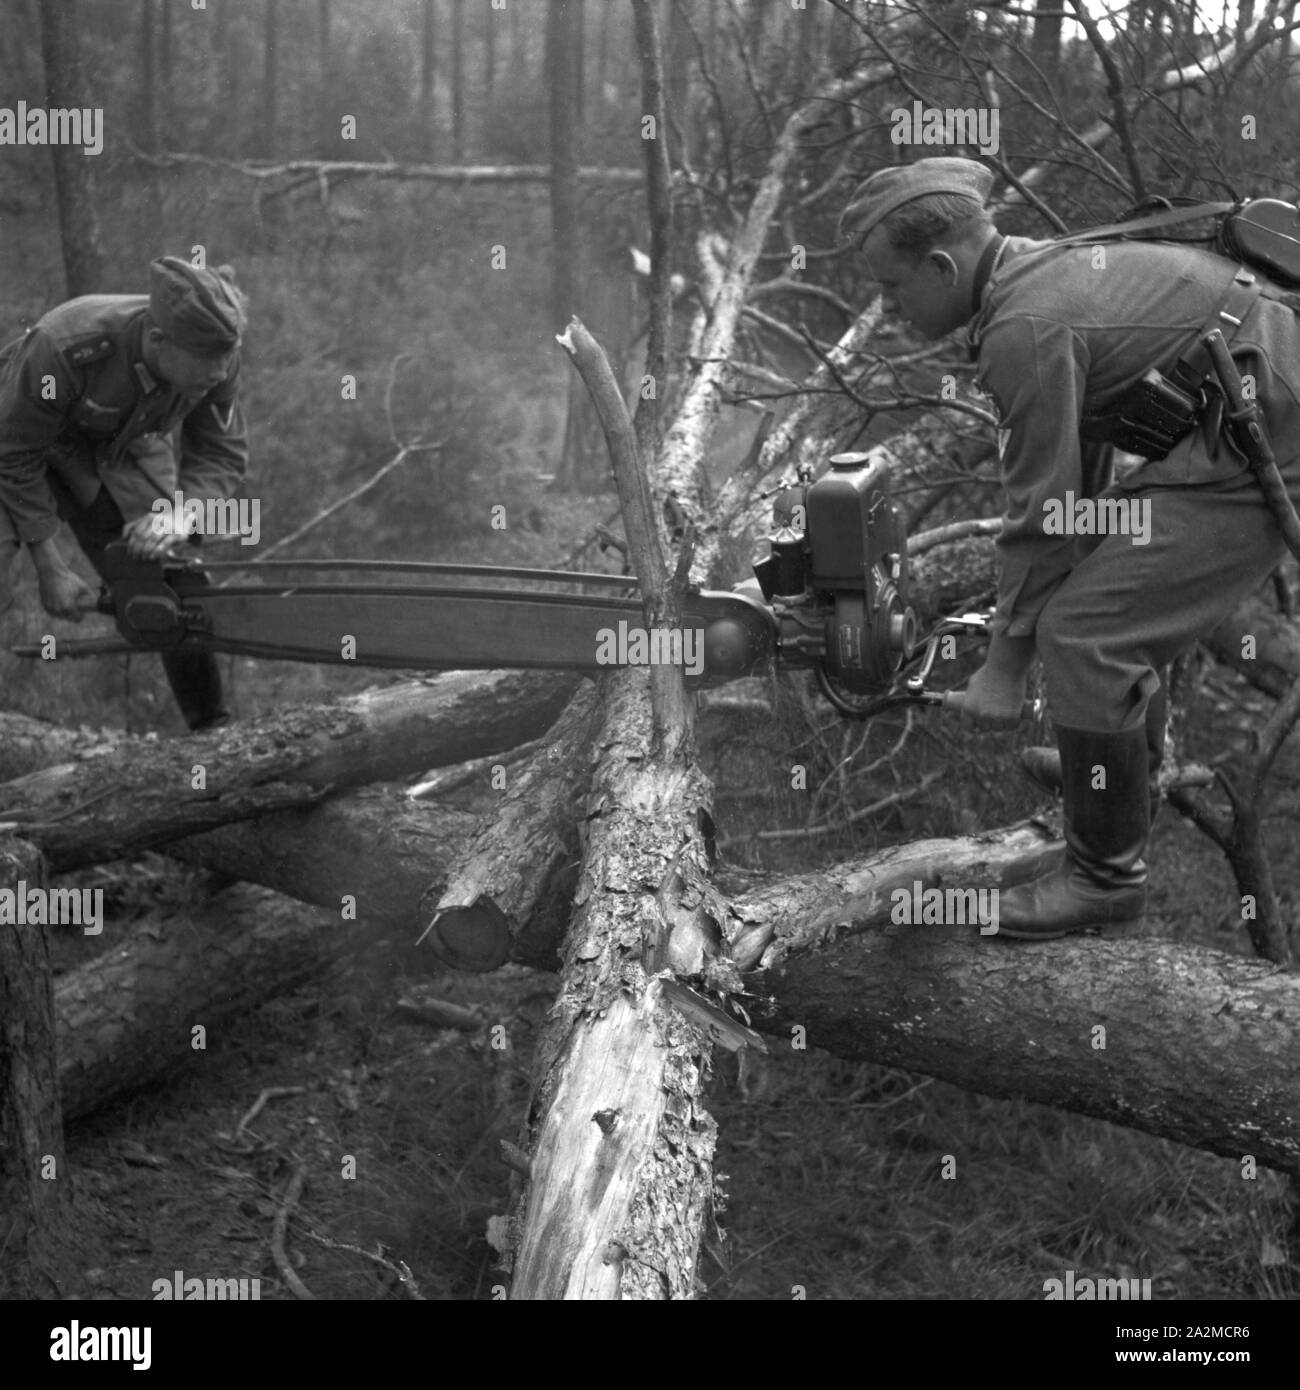 Original-Bildunterschrift: Zerlegen eines Baumstammes mit der Kraftsäge, Deutschland 1940er Jahre. Cutting a trunk with a chainsaw, Germany 1940s. Stock Photo